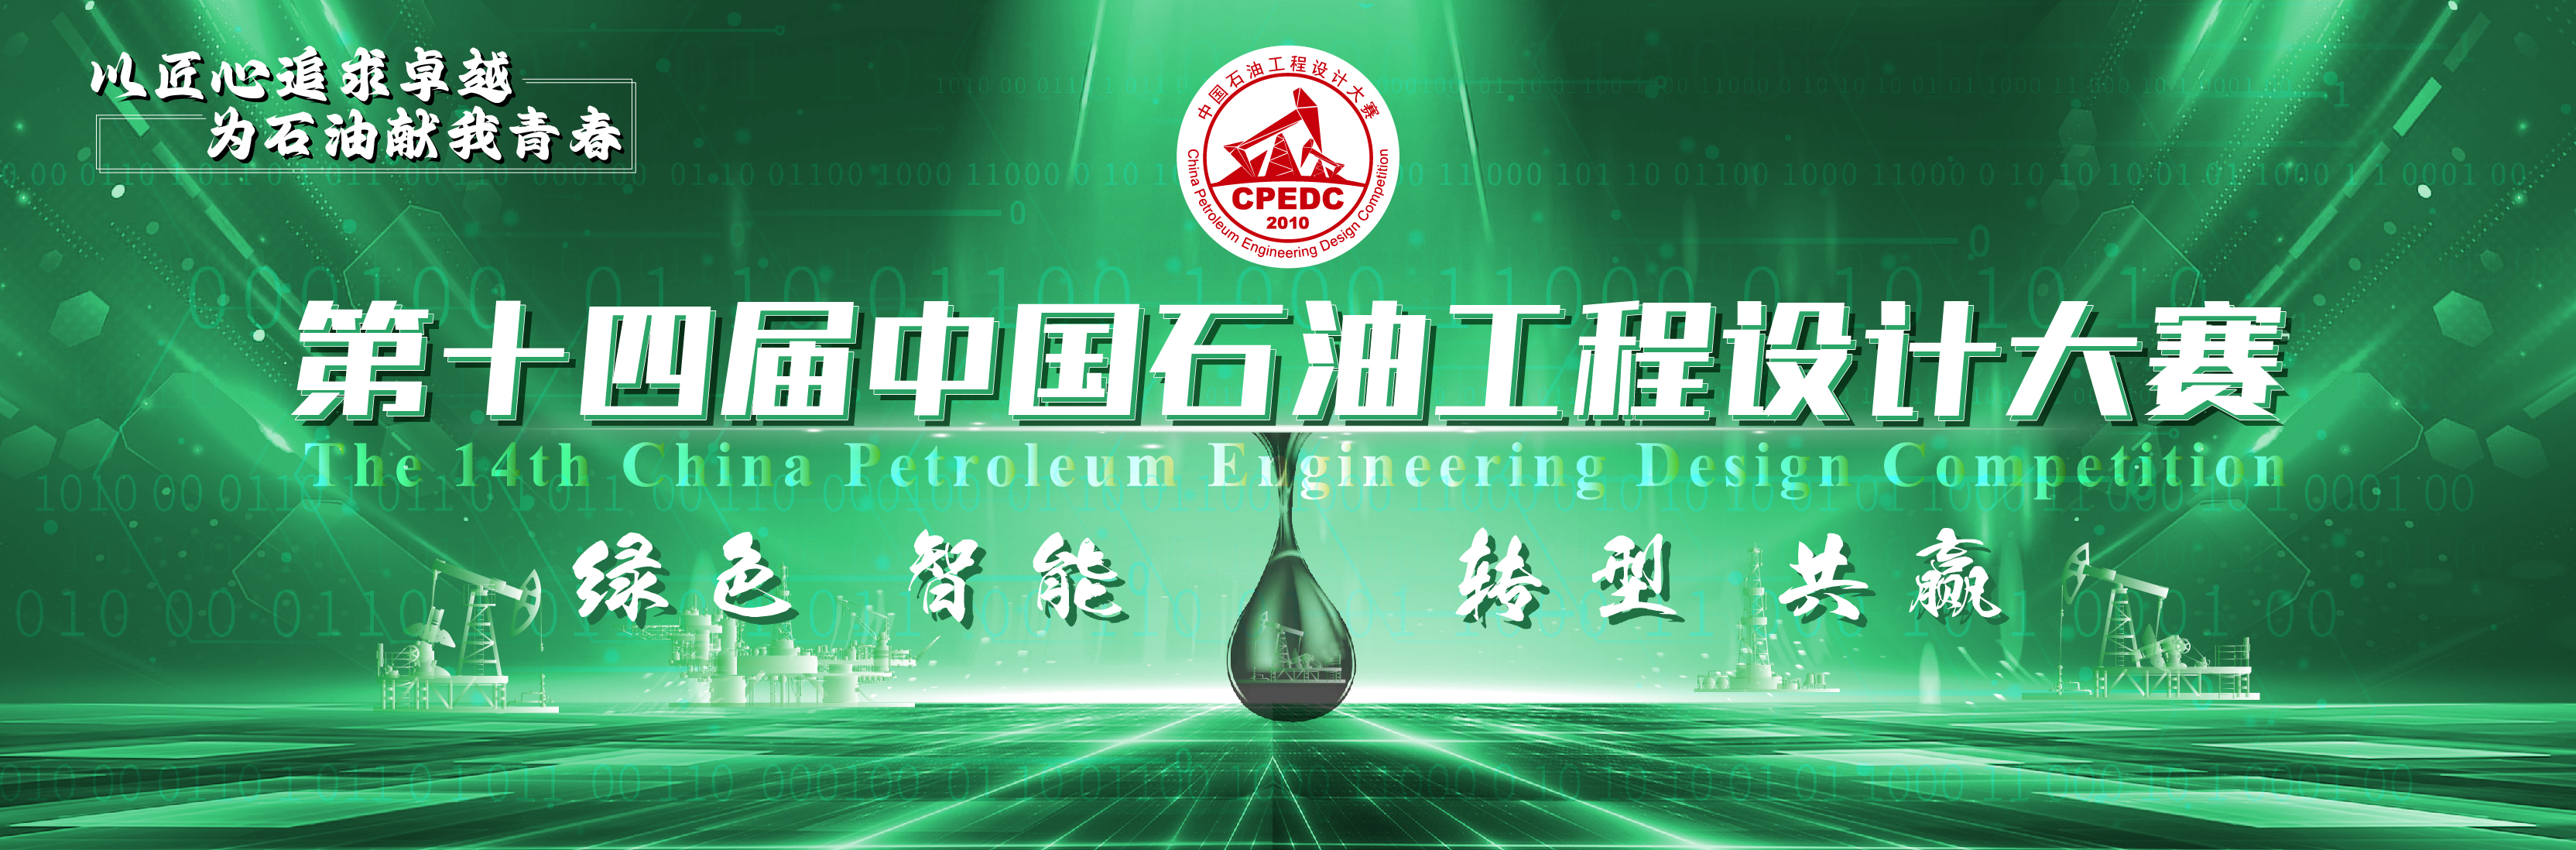 第十四届中国石油工程设计大赛